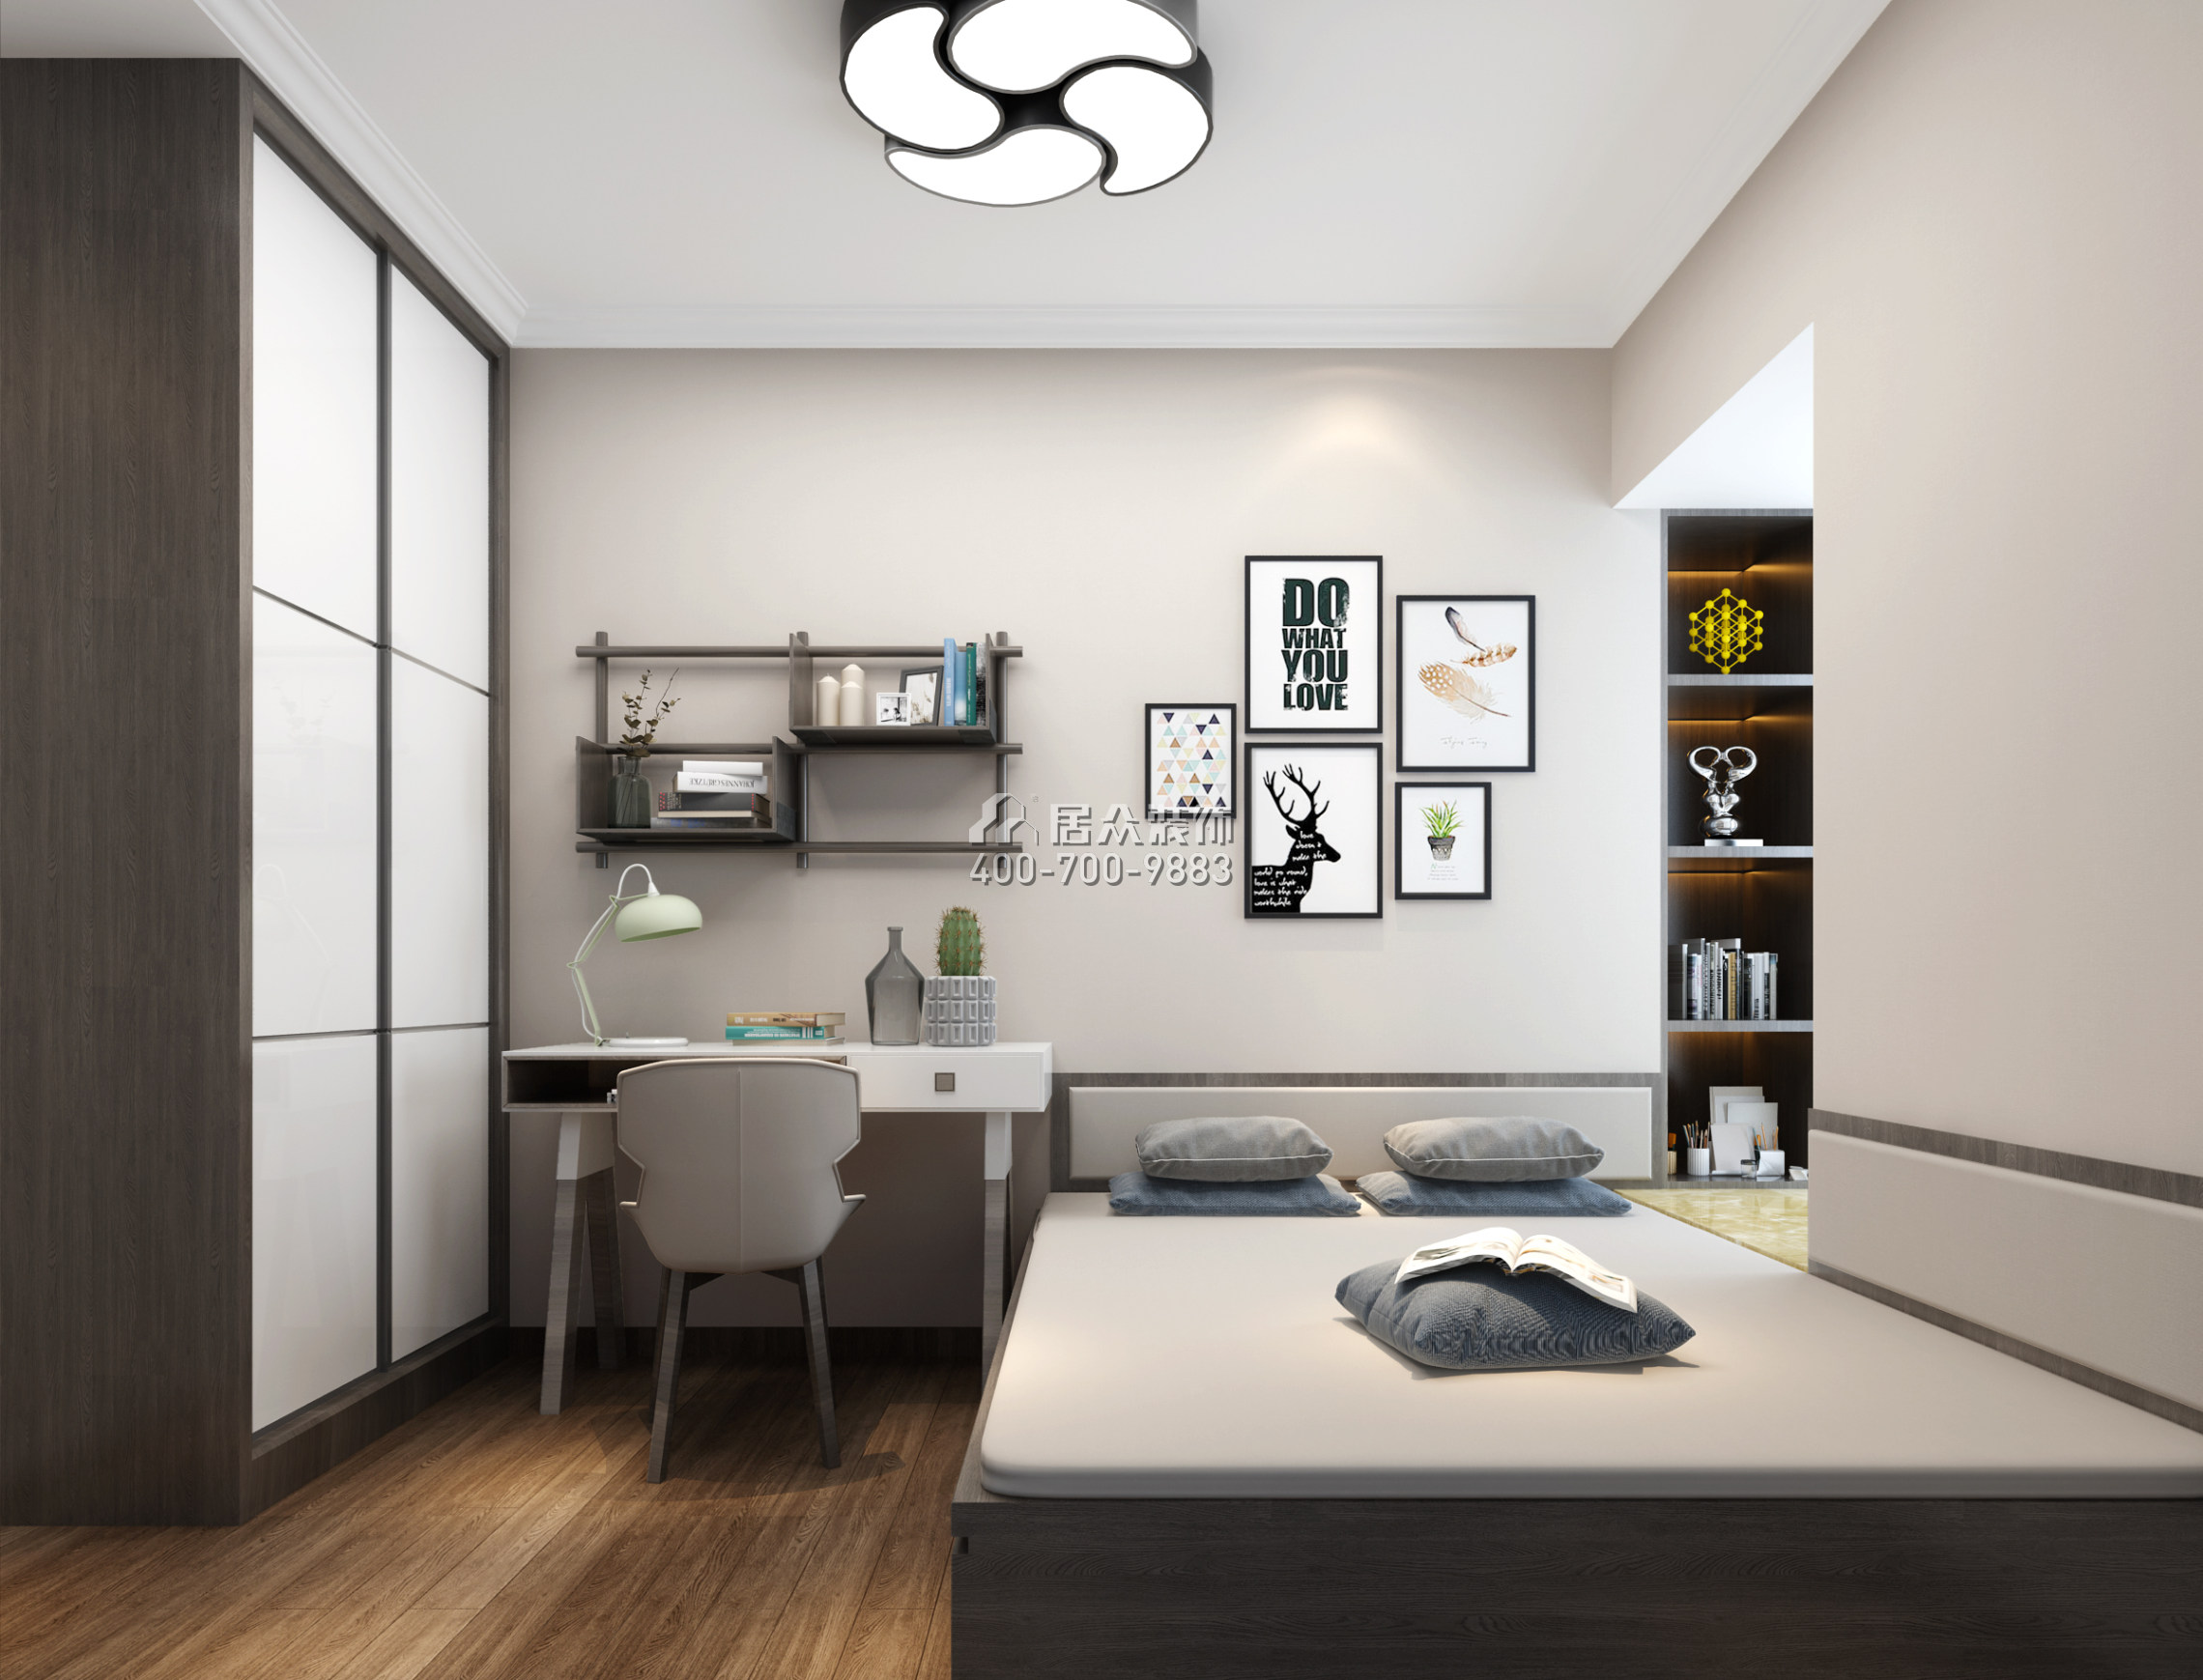 松崗紅星國際二期110平方米現代簡約風格平層戶型臥室書房一體裝修效果圖